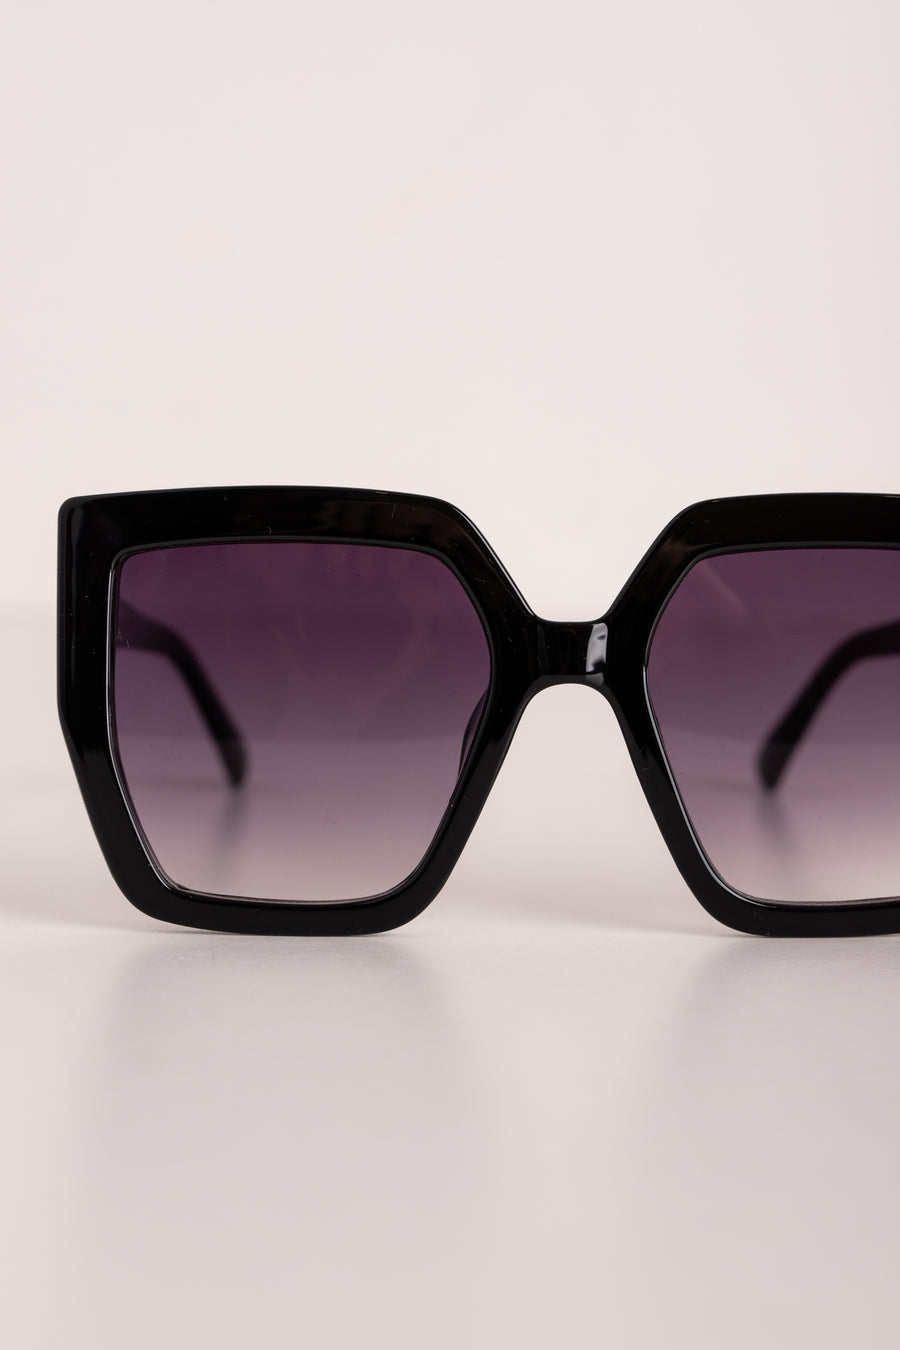 jackieandkate Sonnenbrille schwarz